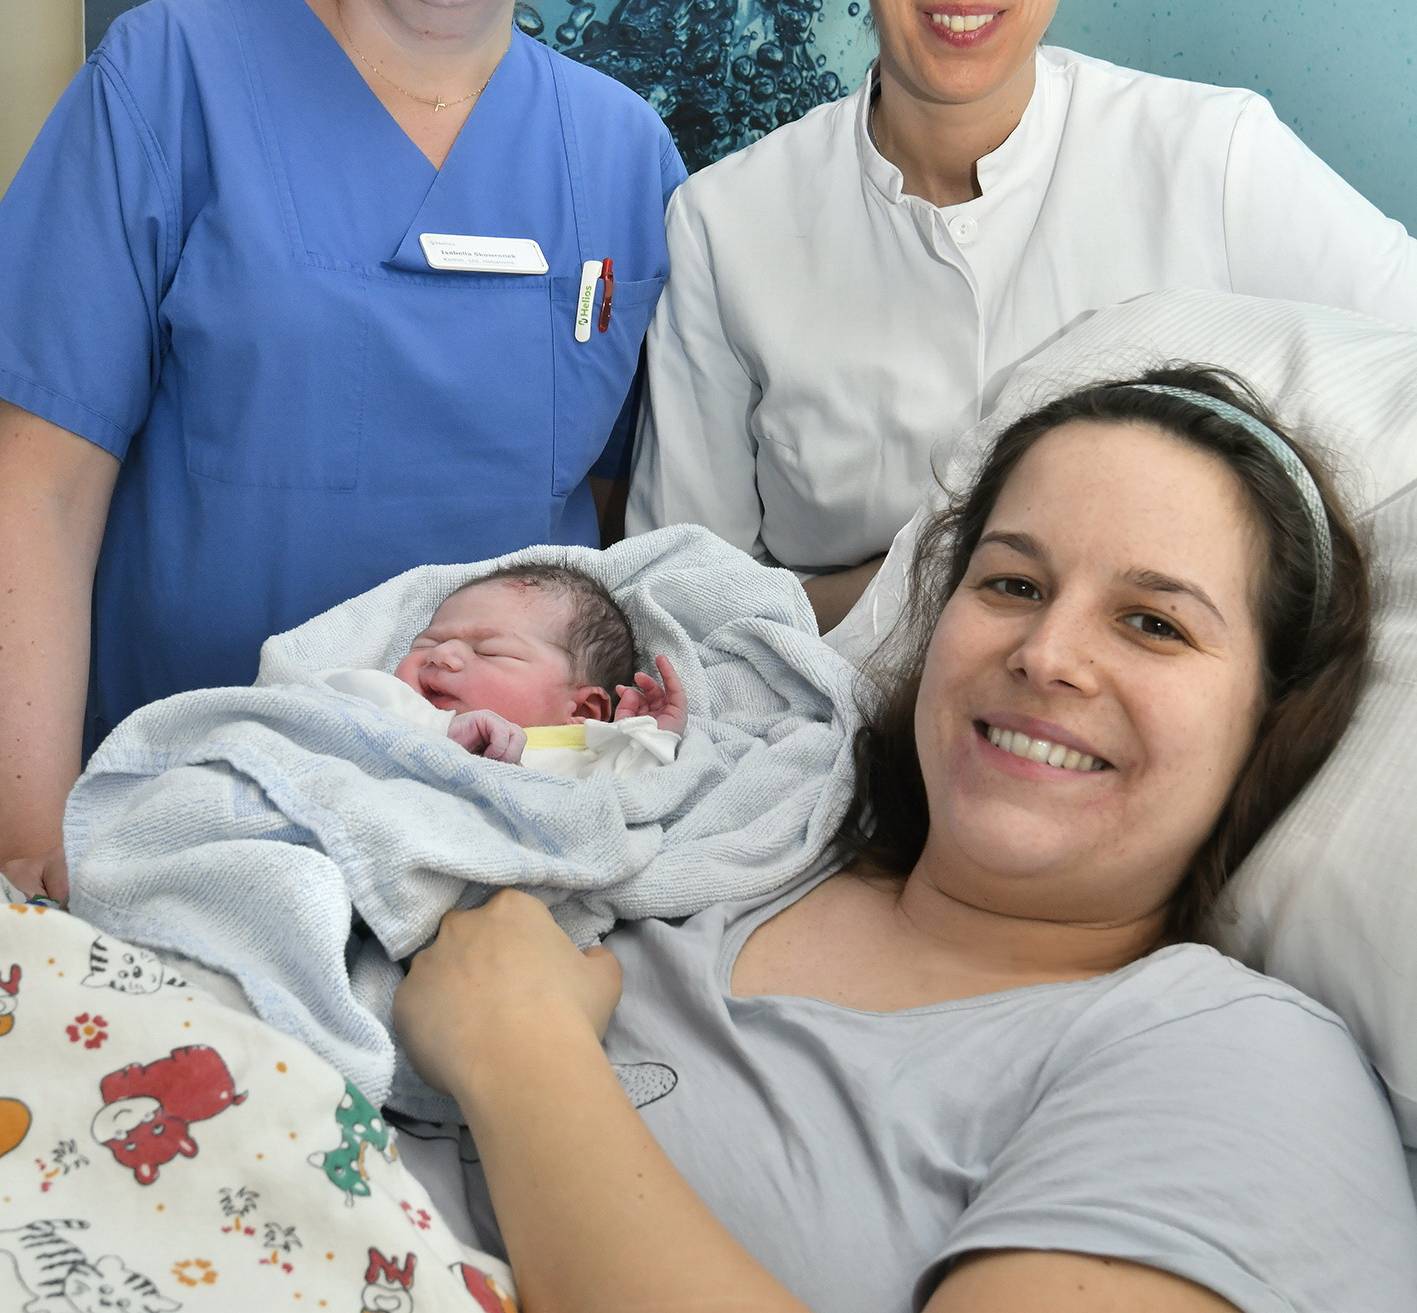  Zwei Stunden nach der Geburt ging es Matteo und seiner Mutter bestens. 